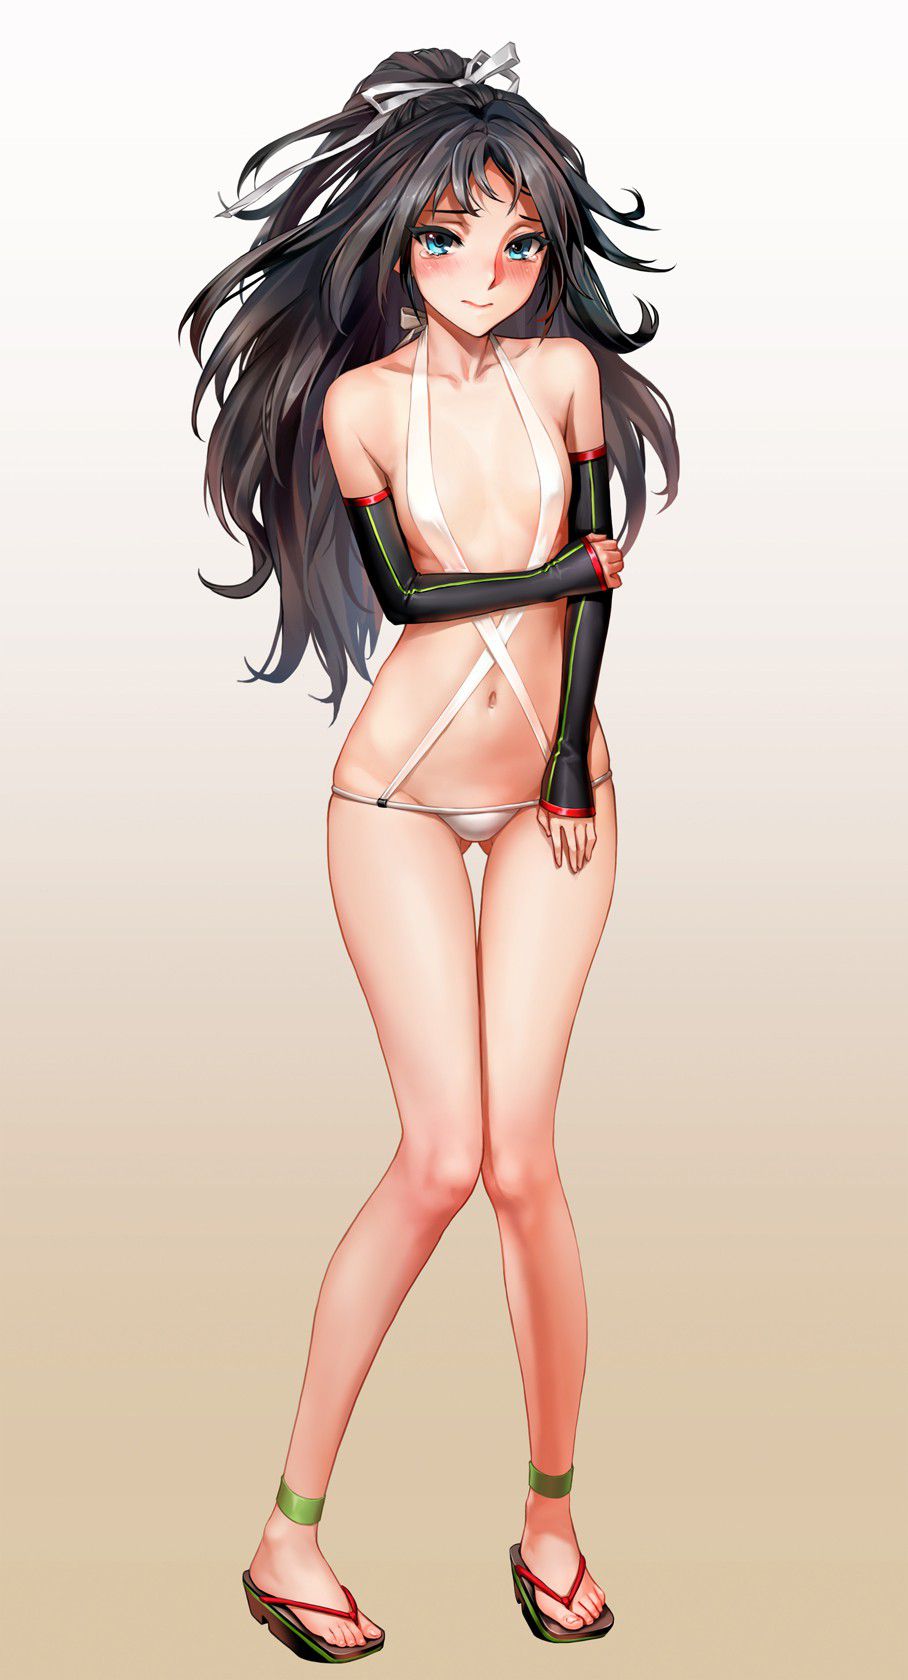 Porori Chikuni! Secondary erotic picture of a girl in a micro bikini wwww part3 24